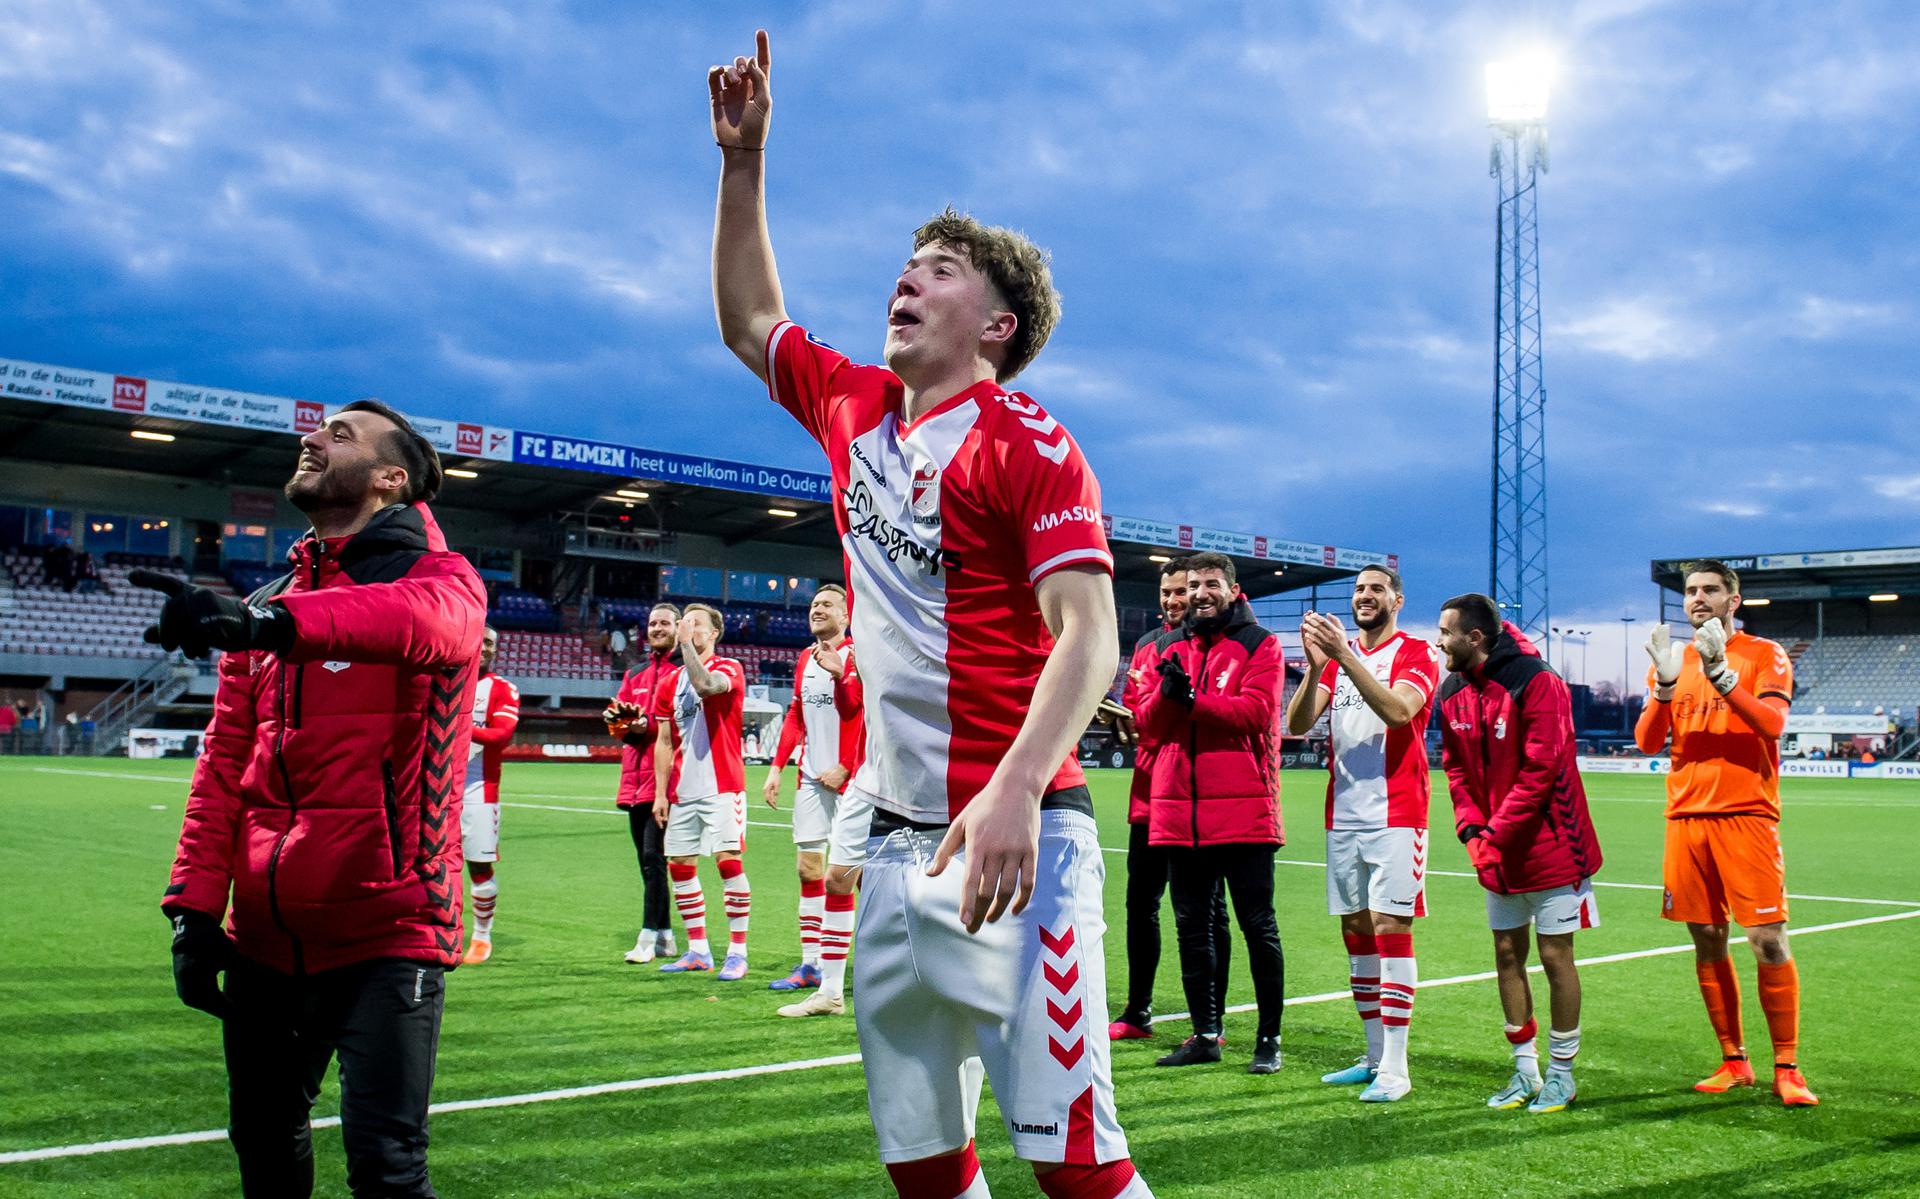 Ole Romeny viert feest met de supporters van FC Emmen na de zege op Excelsior Rotterdam. Op de achtergrond staan zijn teamgenoten, onder wie doelman Mickey van der Hart.